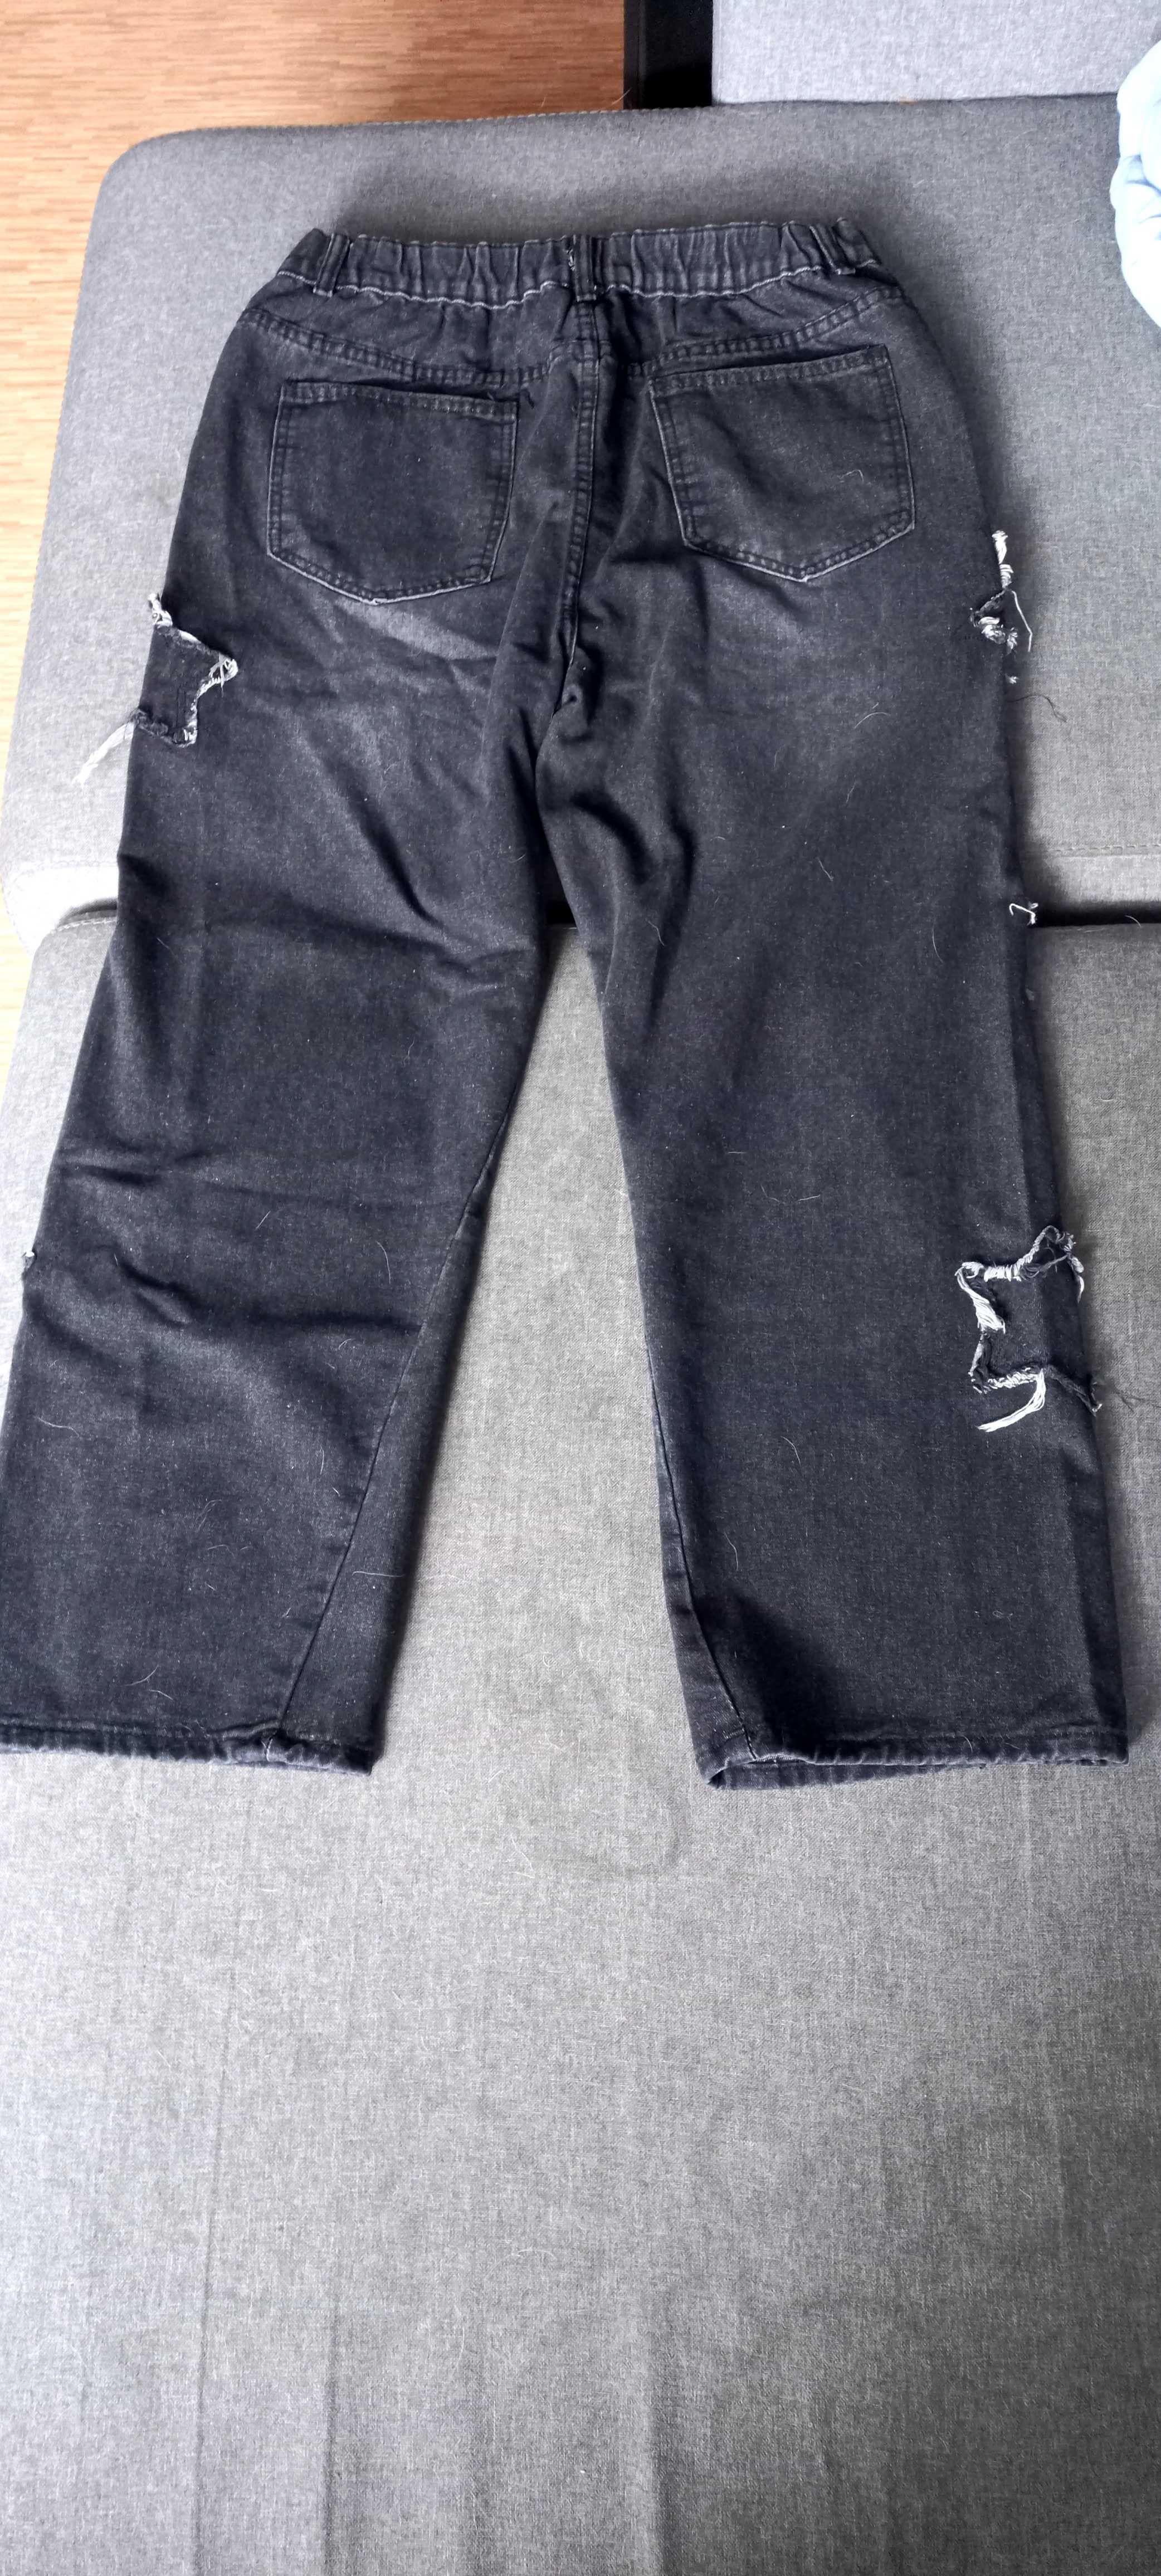 Spodnie dzinsowe czarne męskie młodzieżowe